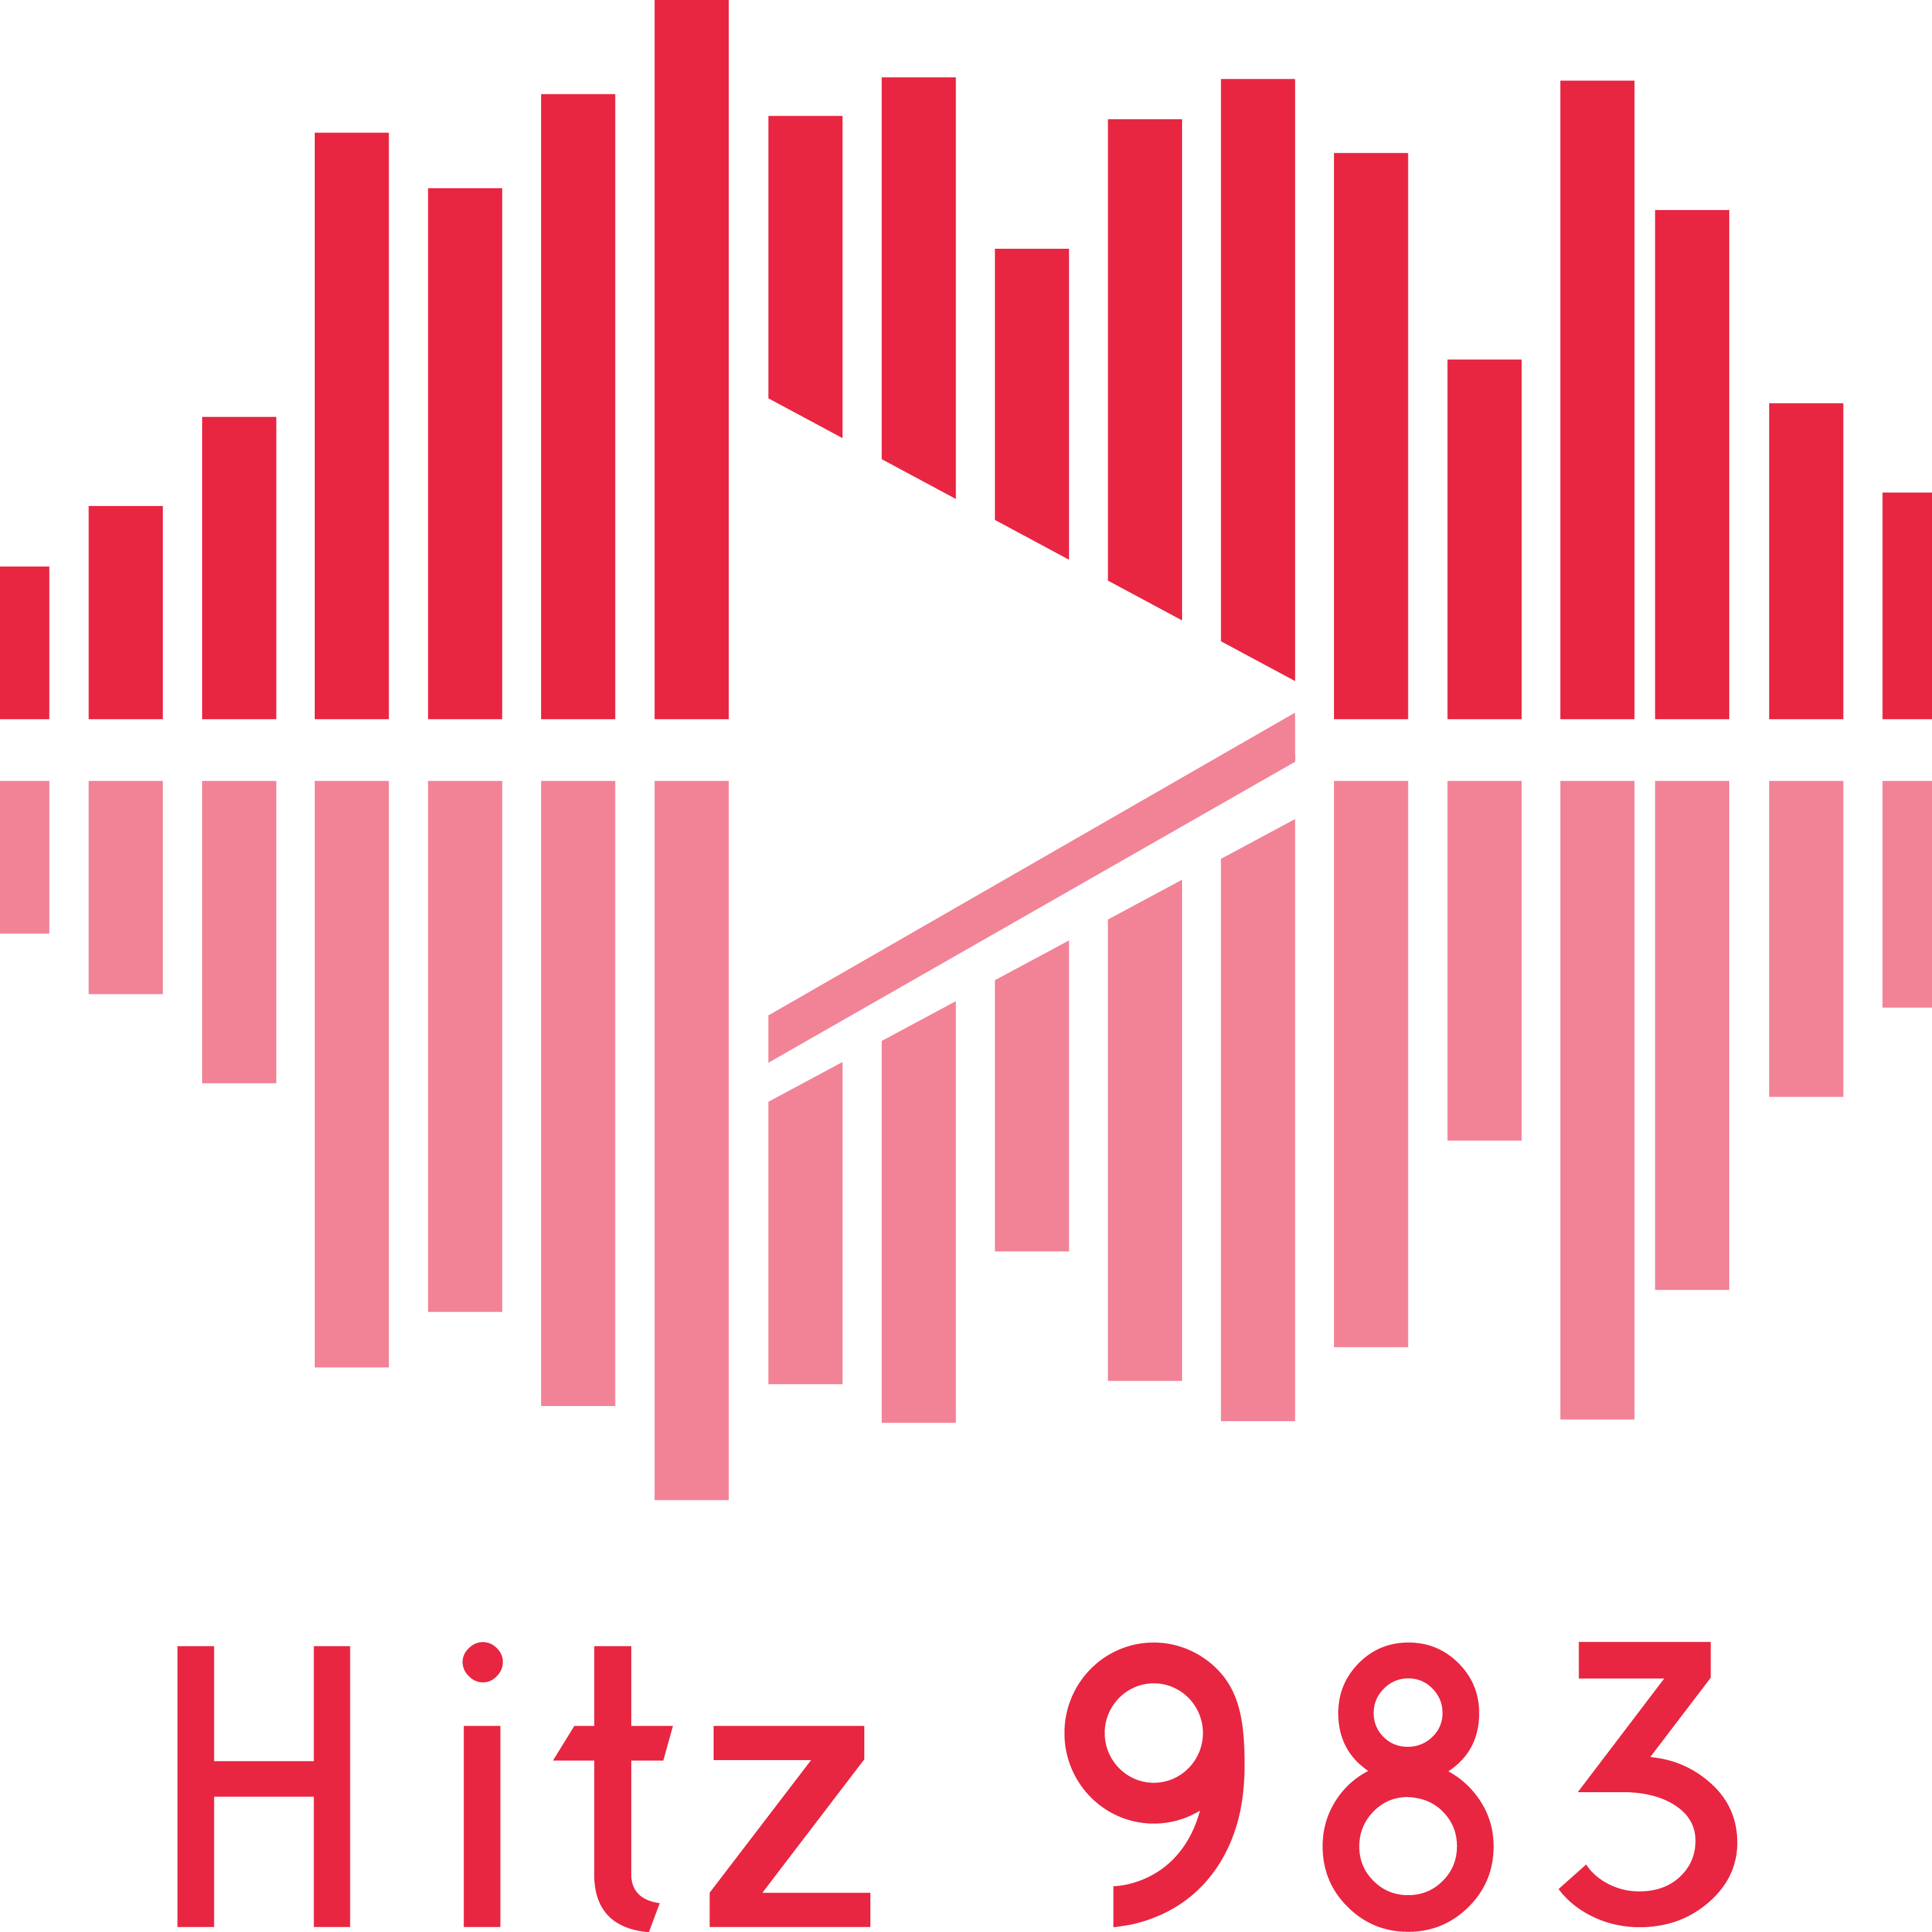 Hitz 983